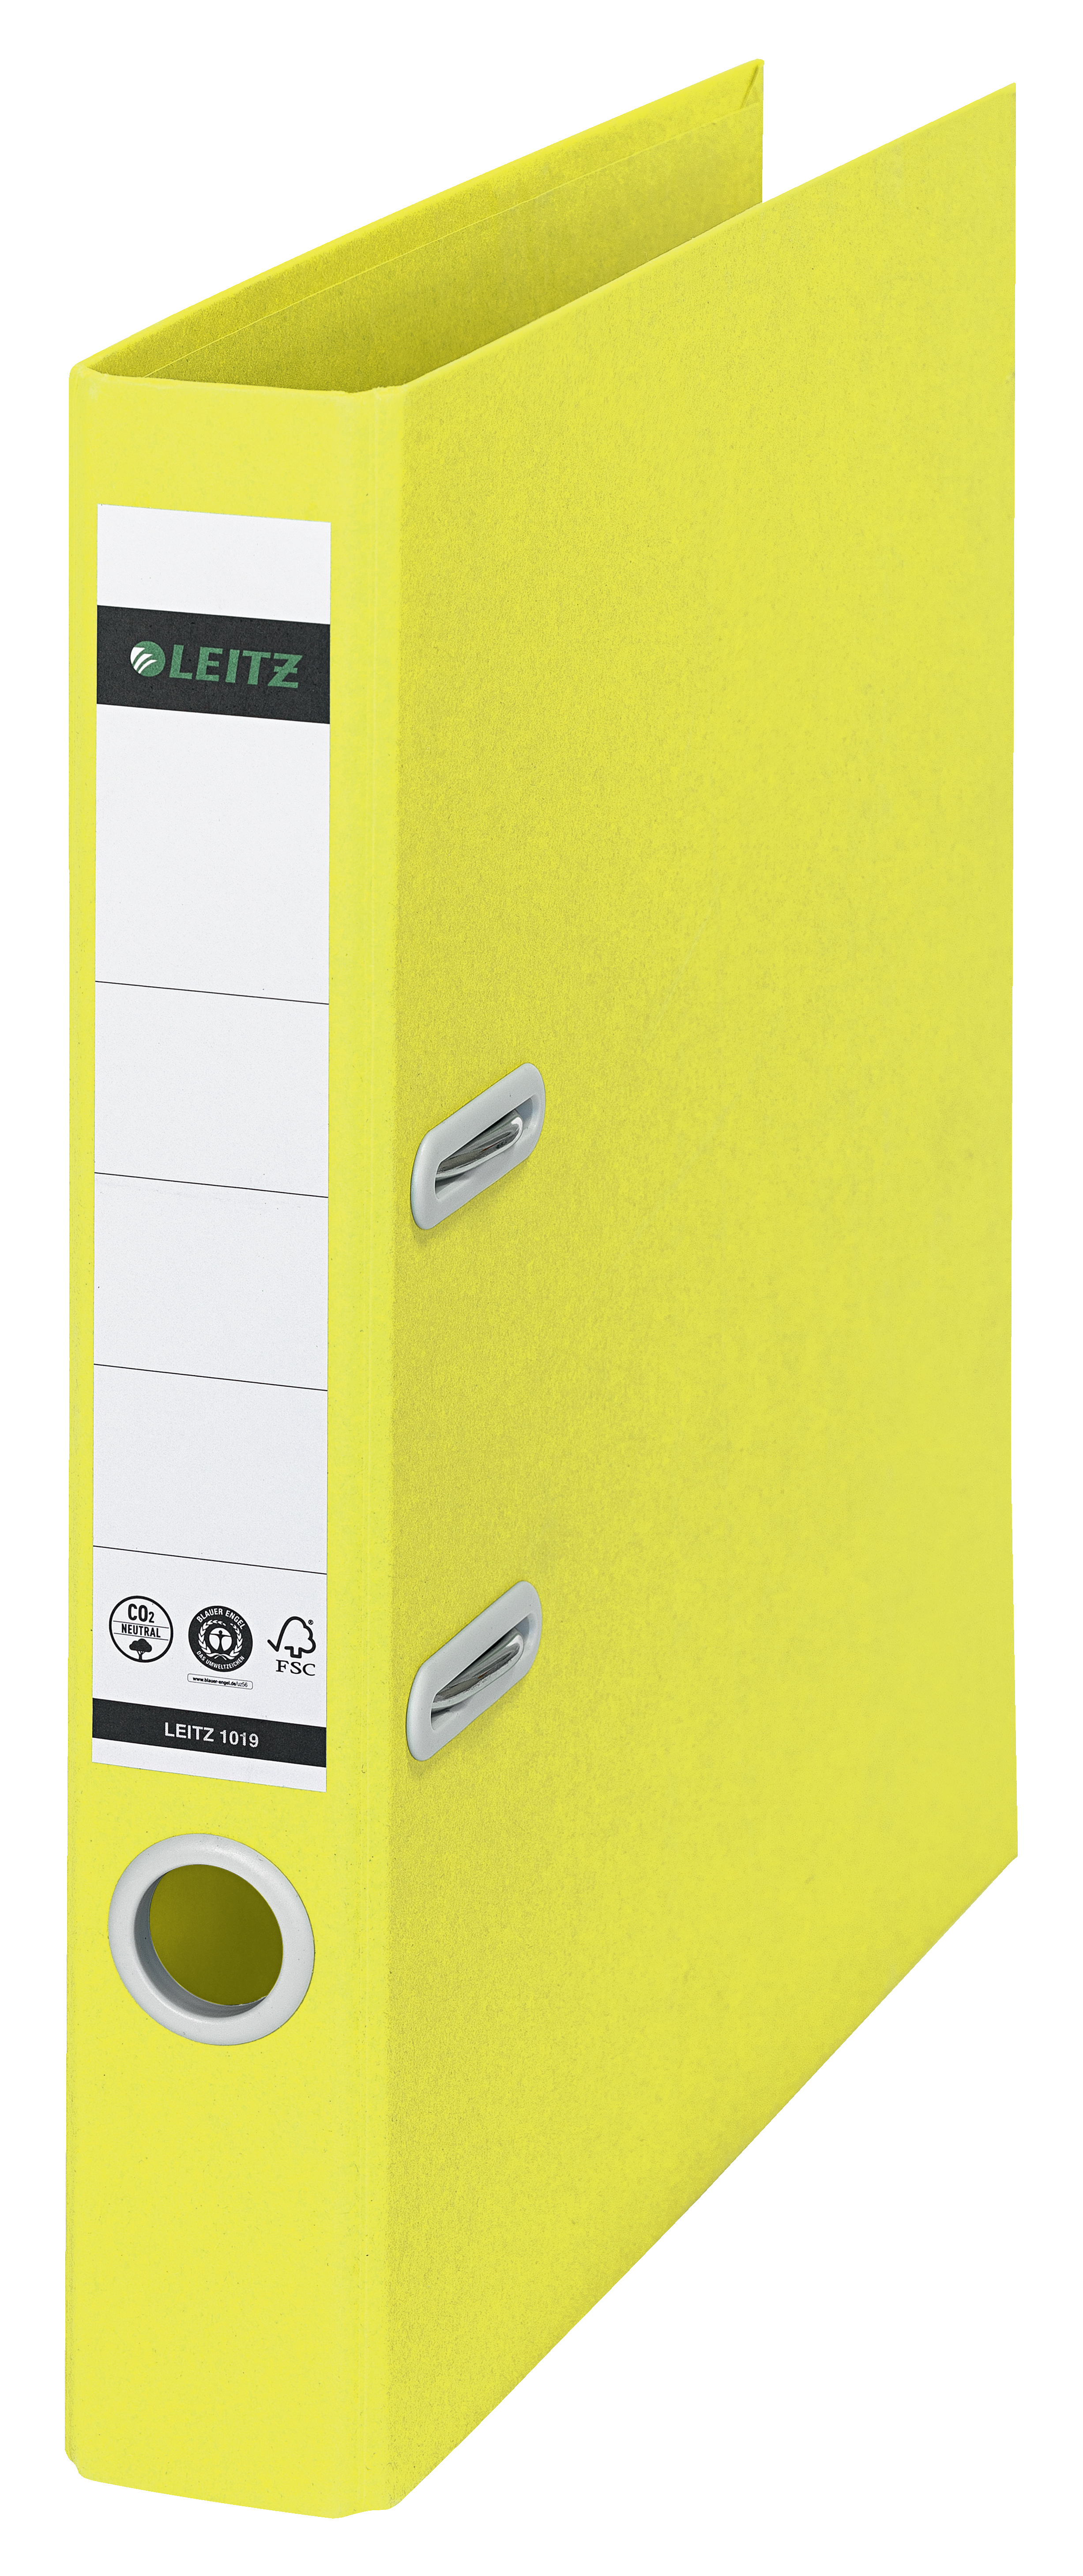 LEITZ Classeur Recycle 5.2cm 1019-00-15 jaune A4 jaune A4